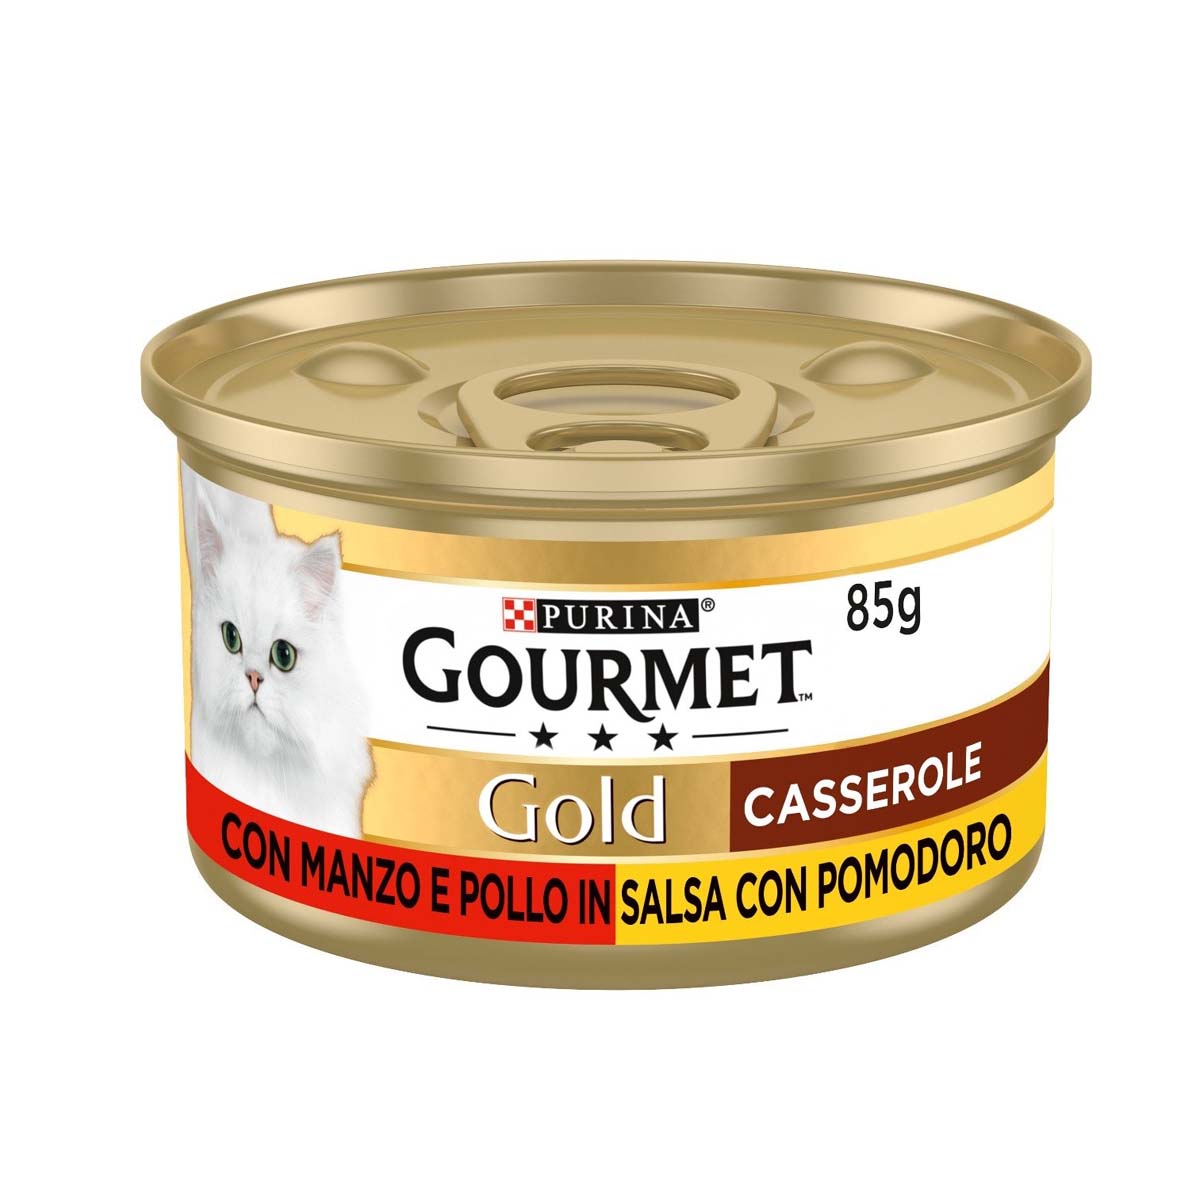 Gourmet Gold Casserole 85g